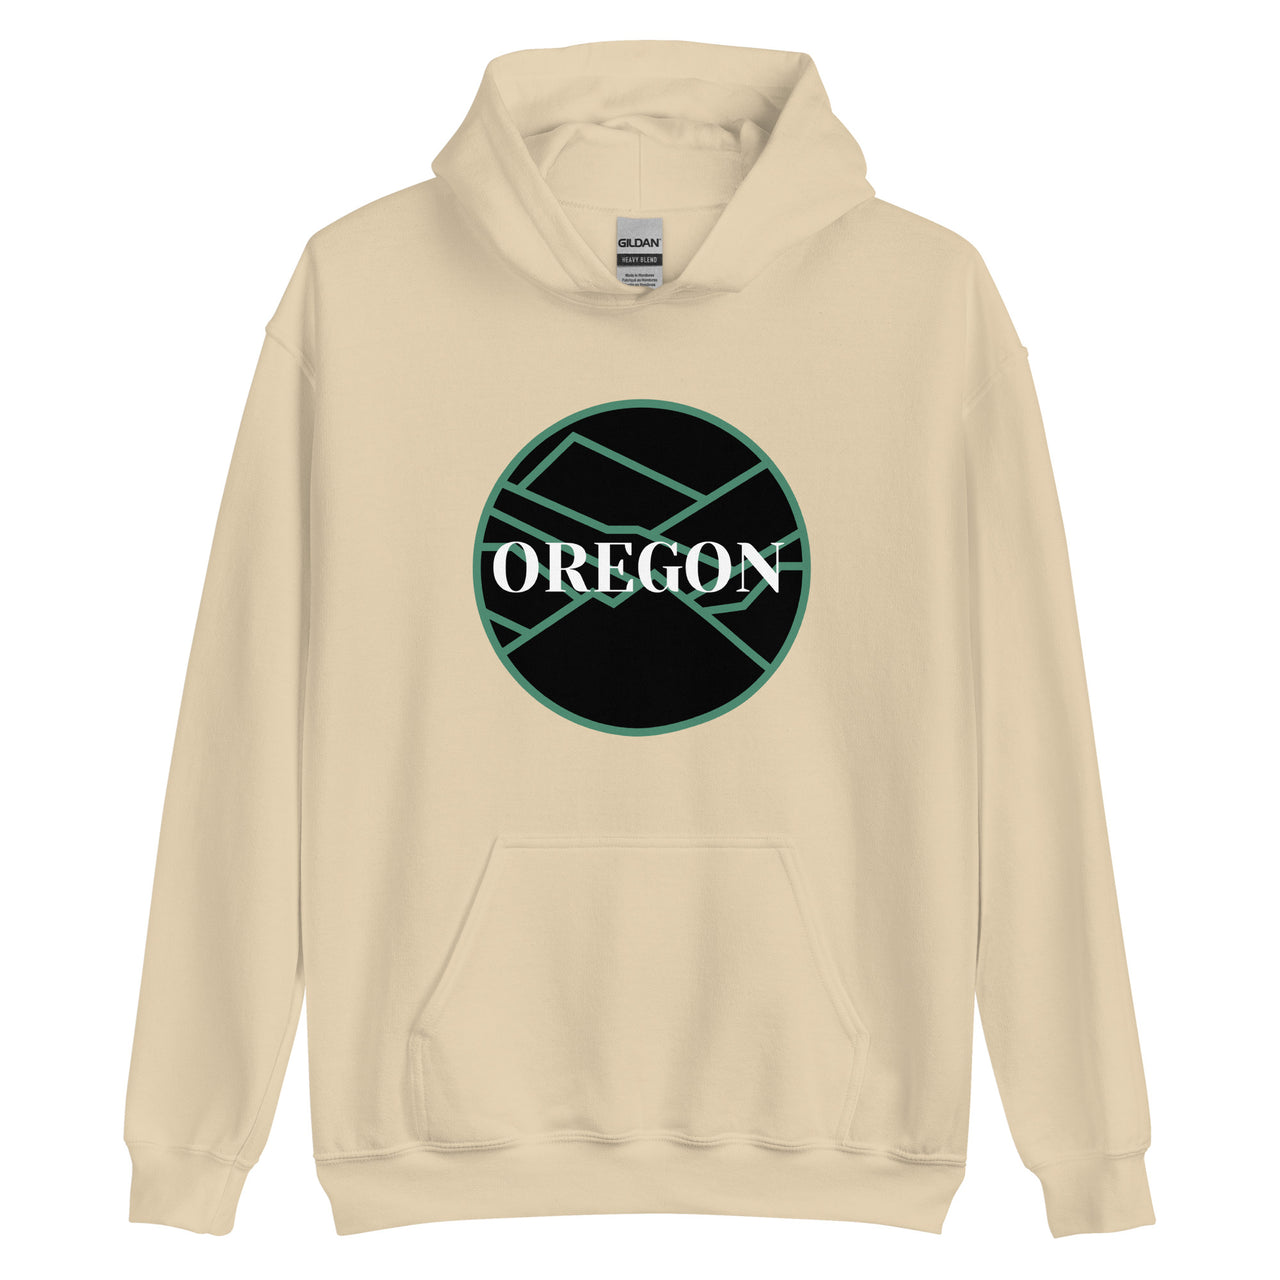 OREGON - Green/Black - Unisex Hoodie